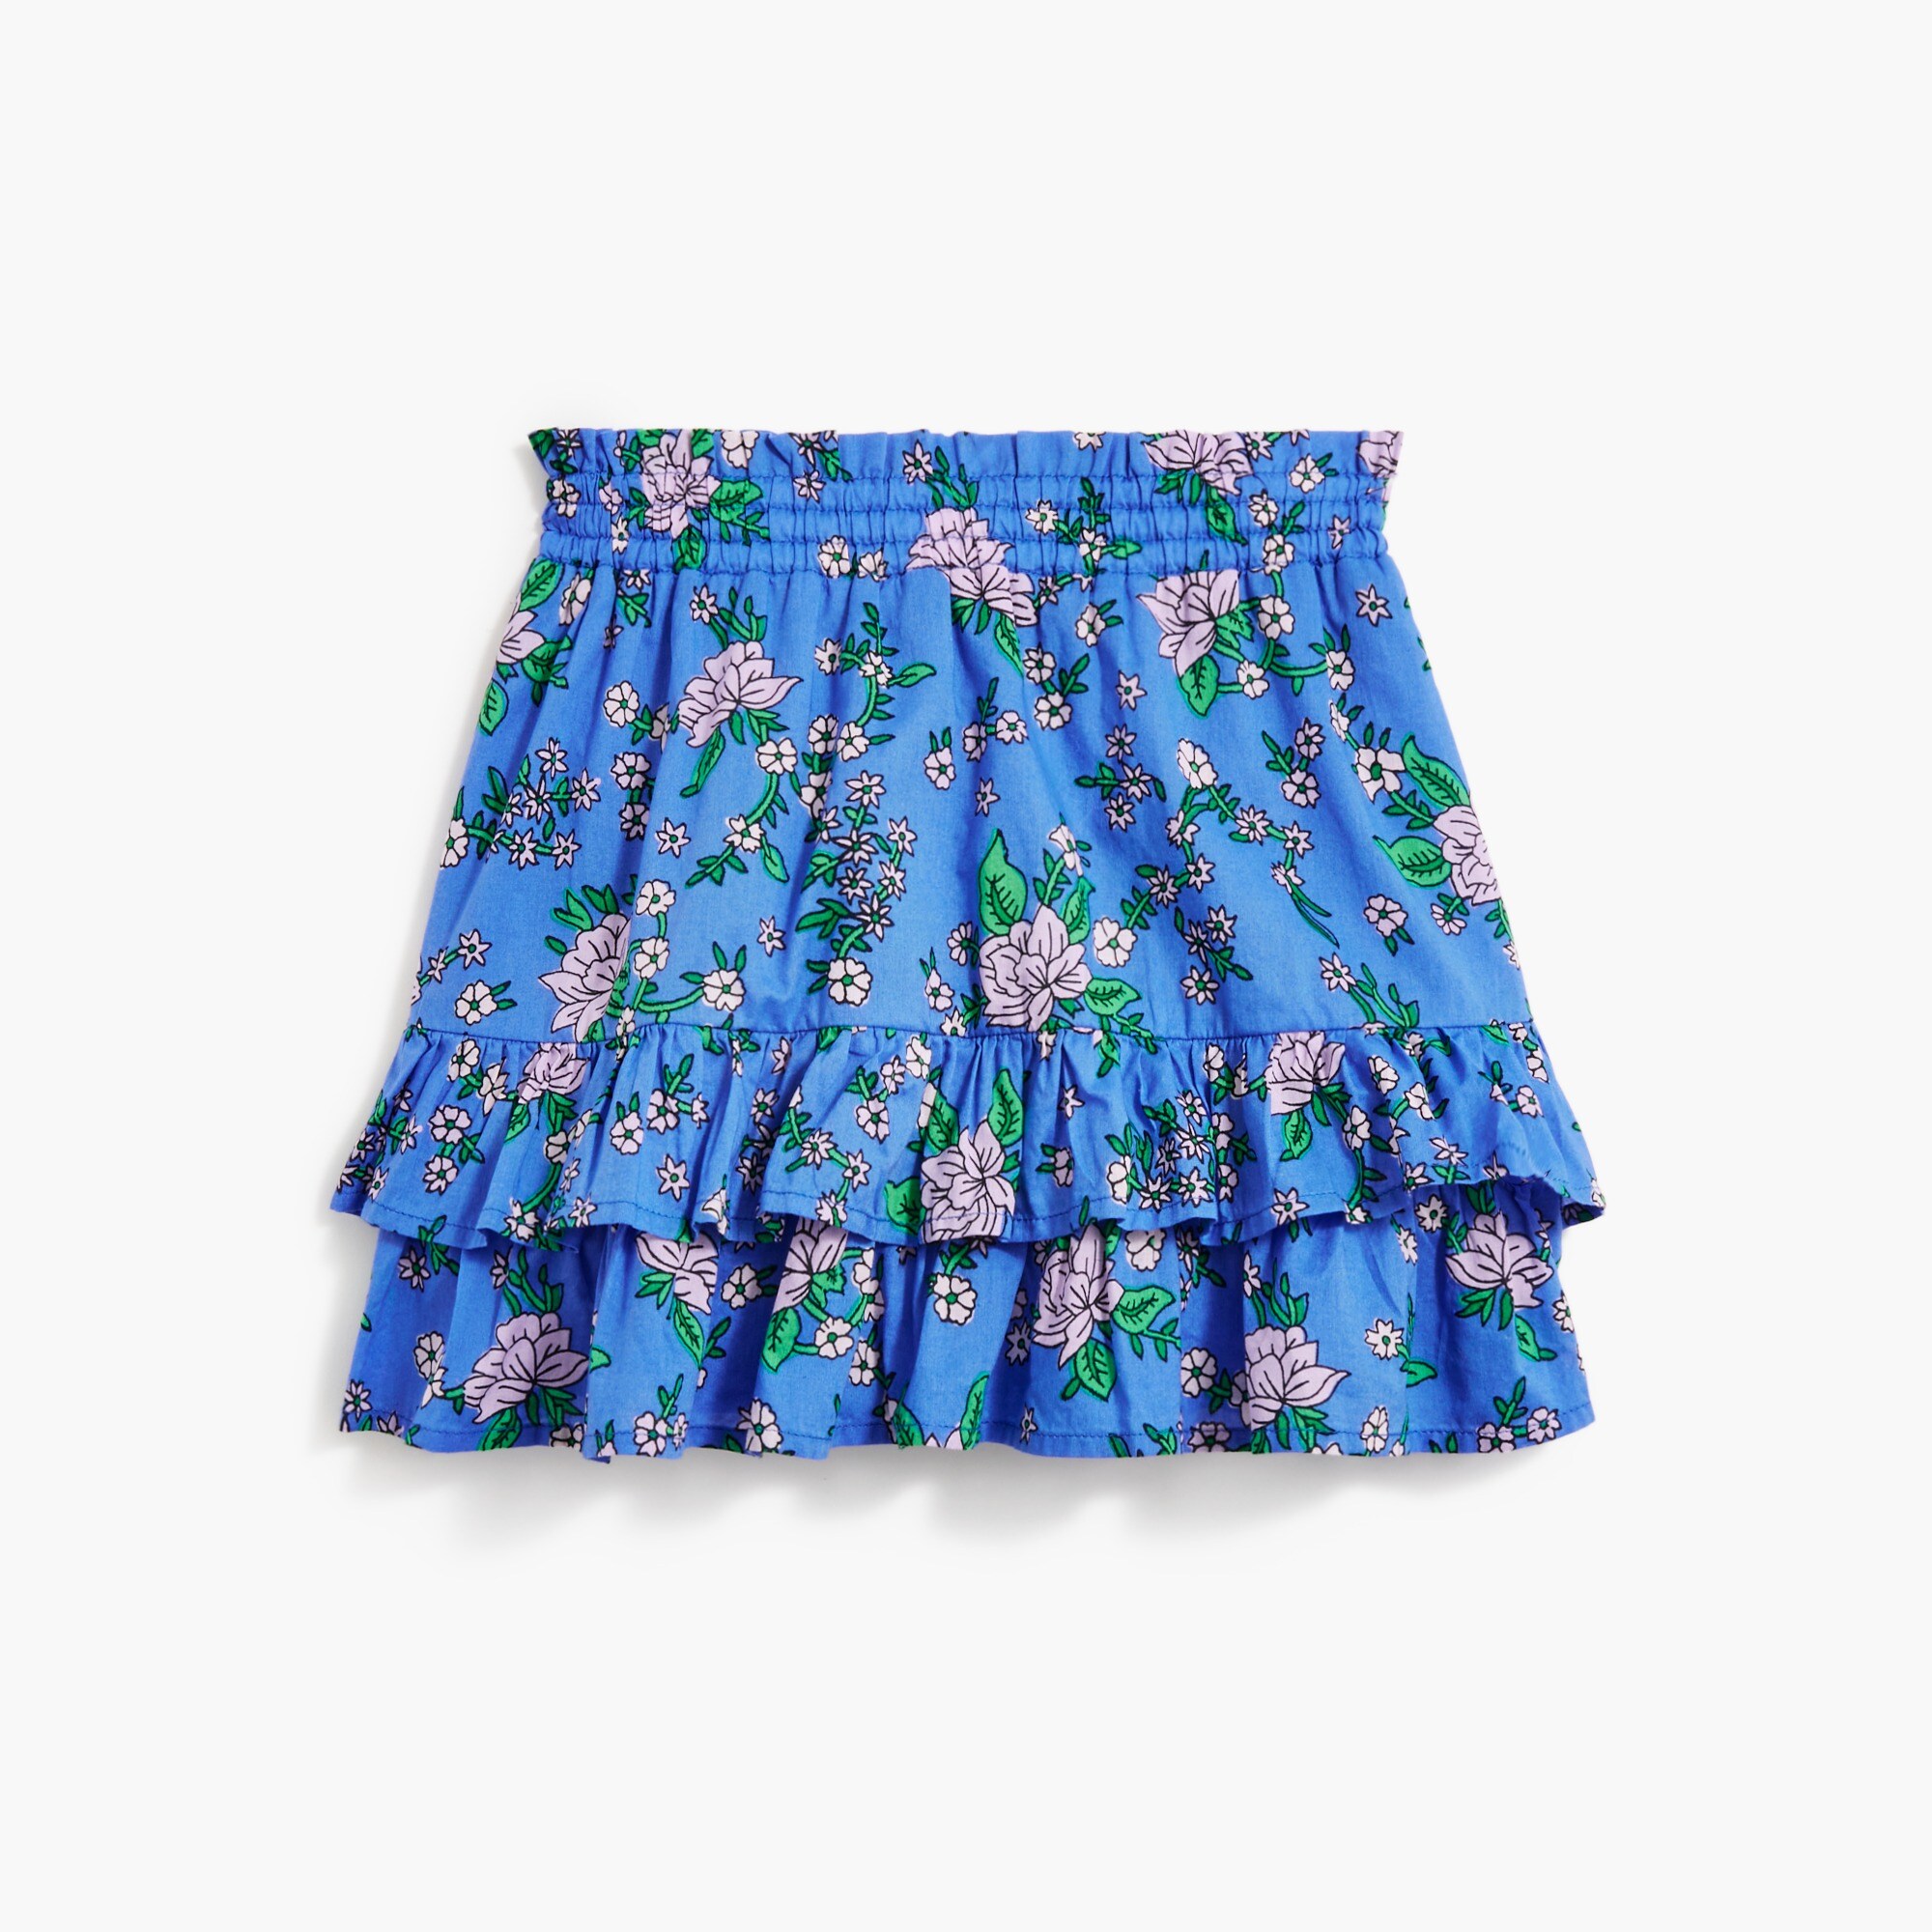  Girls' floral ruffle skirt